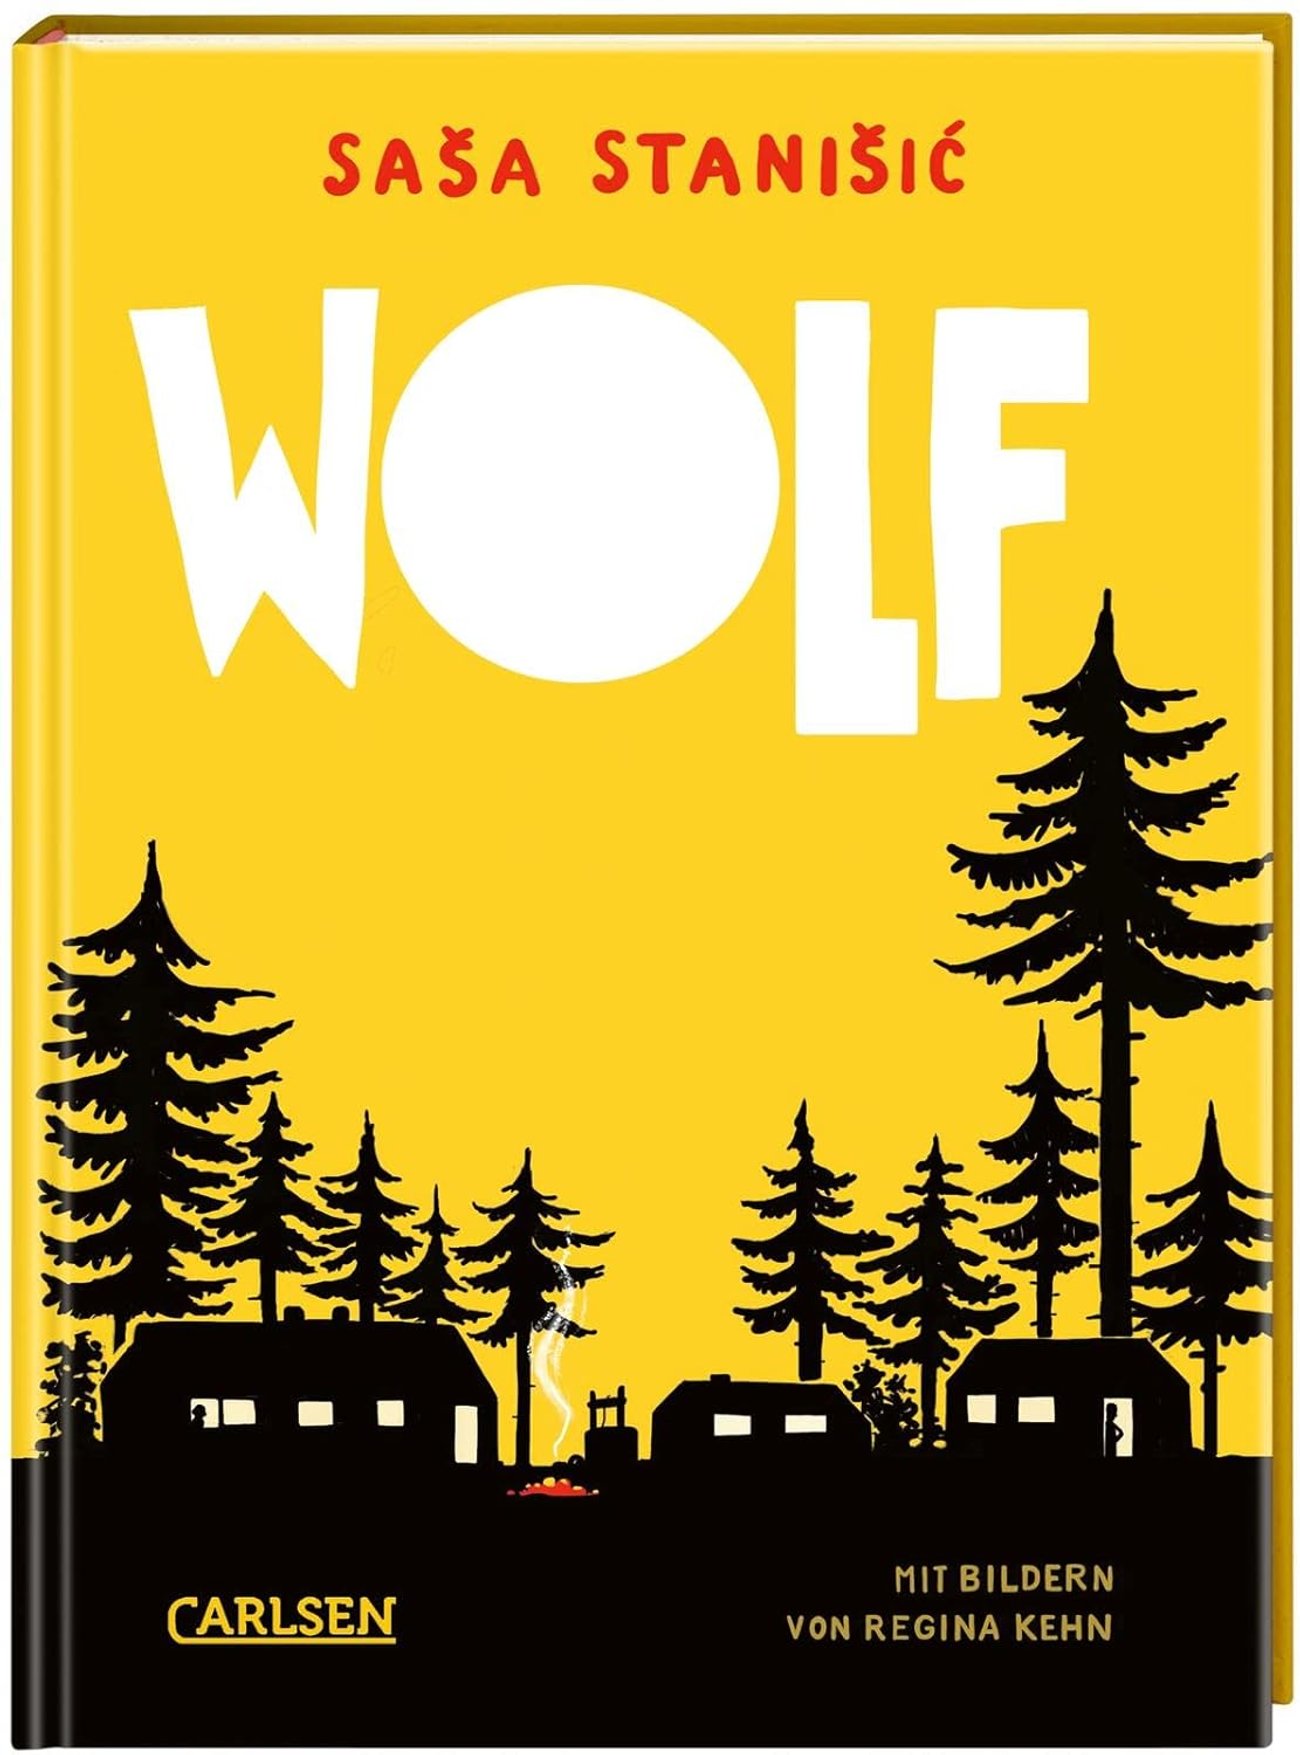 Wolf: Ferienlager im Wald | Der erste Kinderroman von Saša Stanišić - SPIEGEL Bestseller November 20